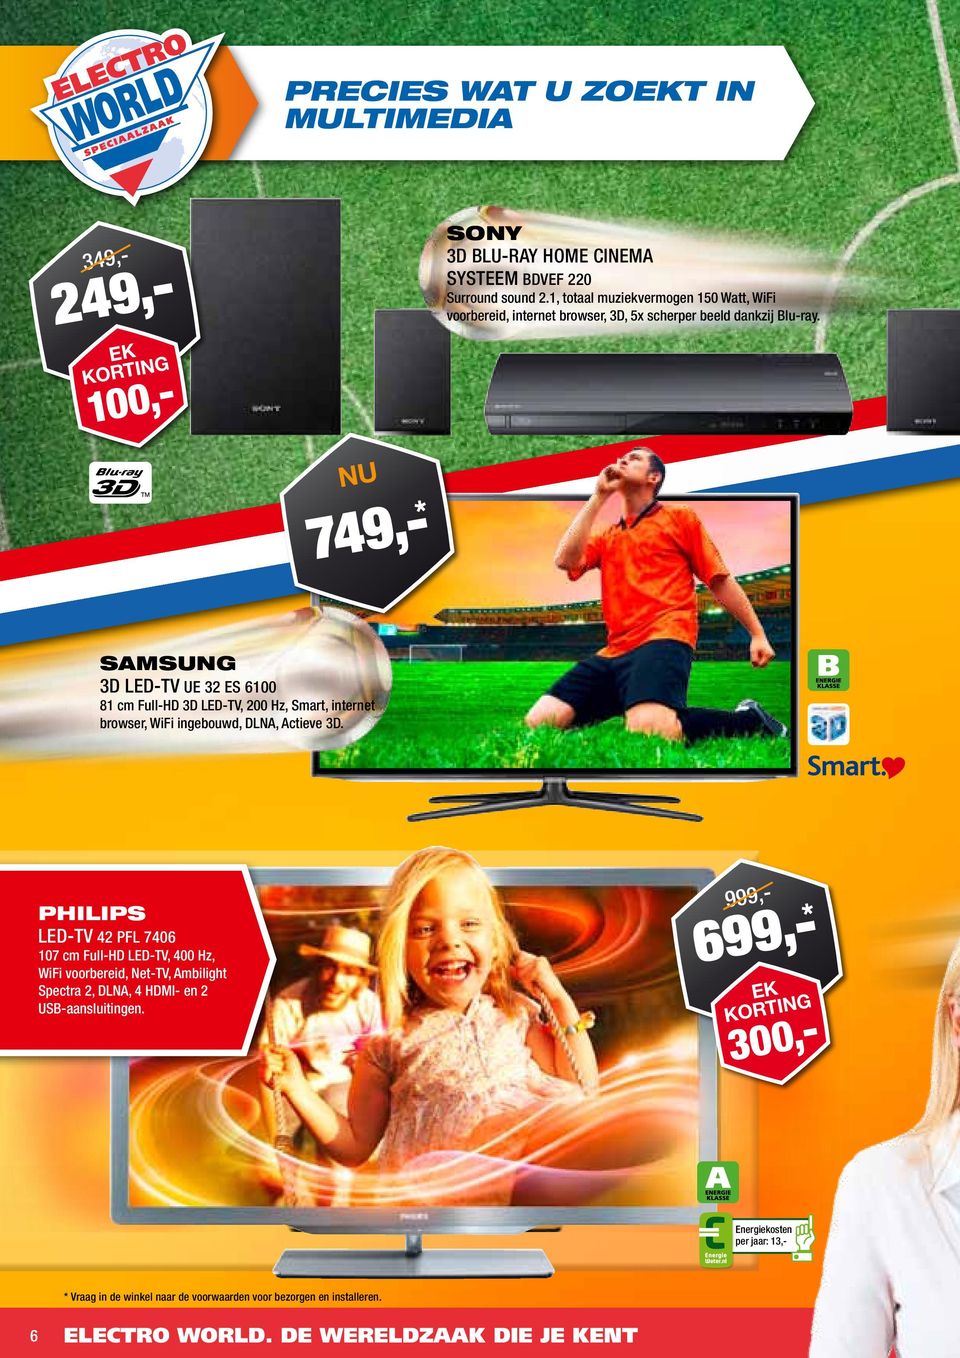 N KRTI 100 74 Samsung 3D LED-TV UE 32 ES 6100 81 cm Full-HD 3D LED-TV 200 Hz Smart internet browser WiFi ingebouwd DLNA Actieve 3D.